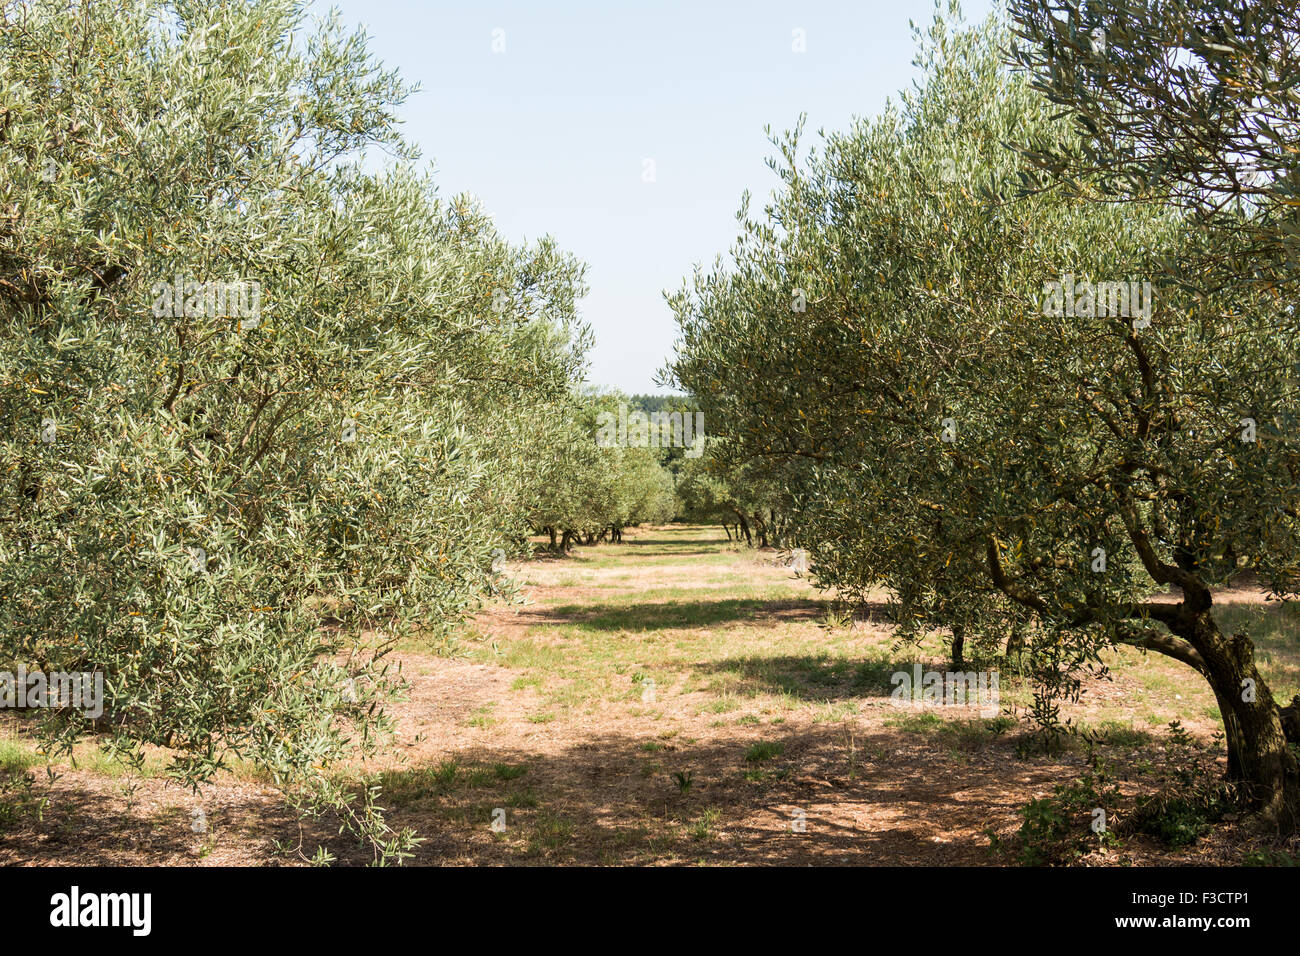 Olivar, grupo de olivos en el soleado sur de Europa - carretera Foto de stock